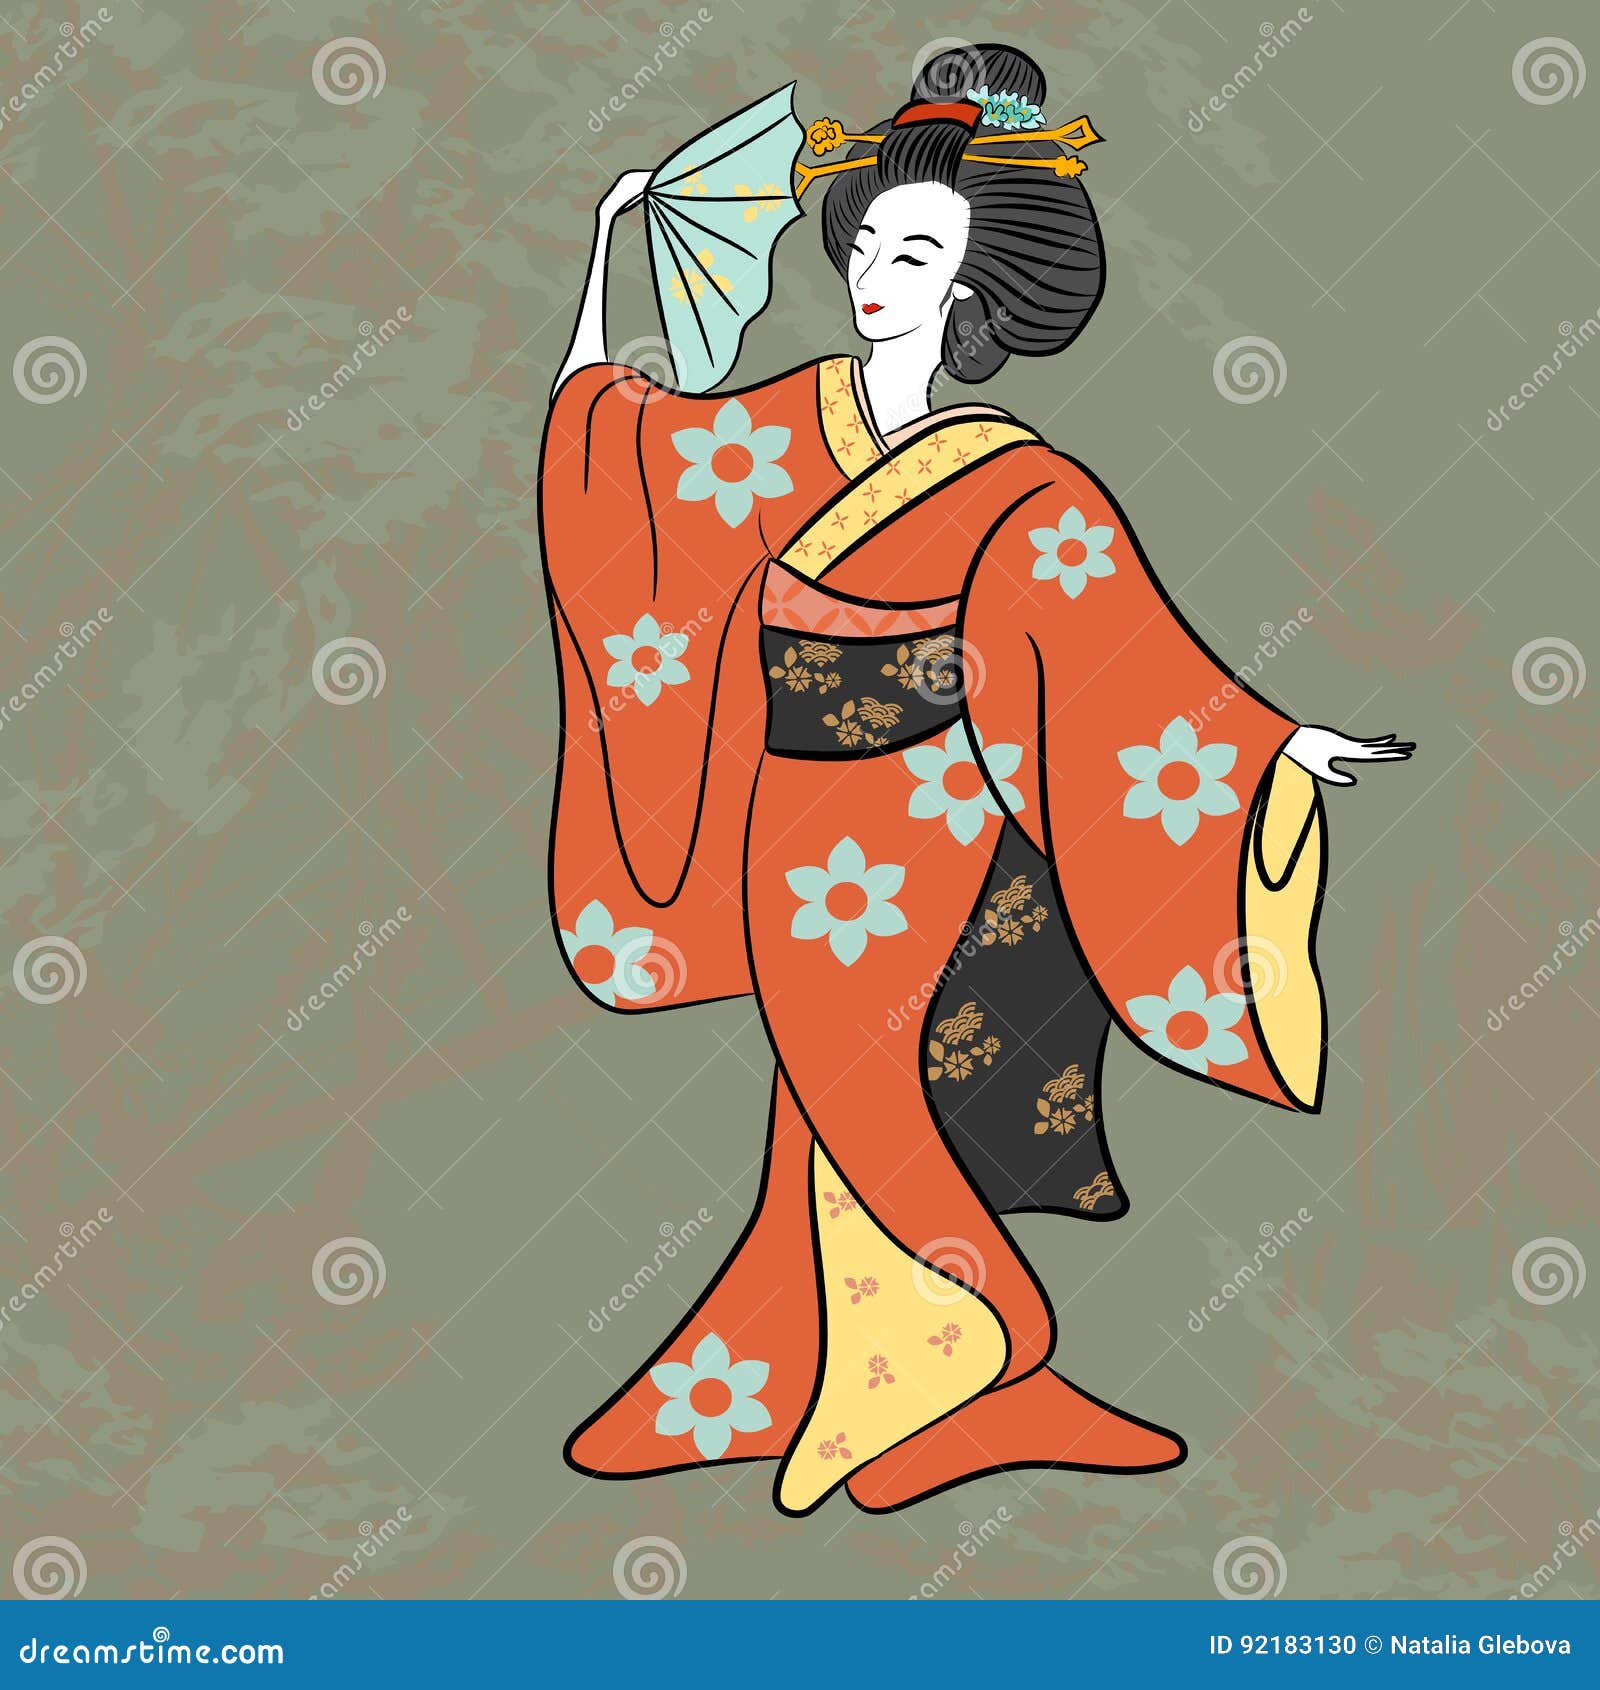 Viñetas foro nuevo - Página 11 Estilo-antiguo-de-la-mujer-japonesa-cl%C3%A1sica-antigua-de-jap%C3%B3n-del-geisha-del-baile-del-dibujo-muchacha-de-geisha-japonesa-hermosa-92183130